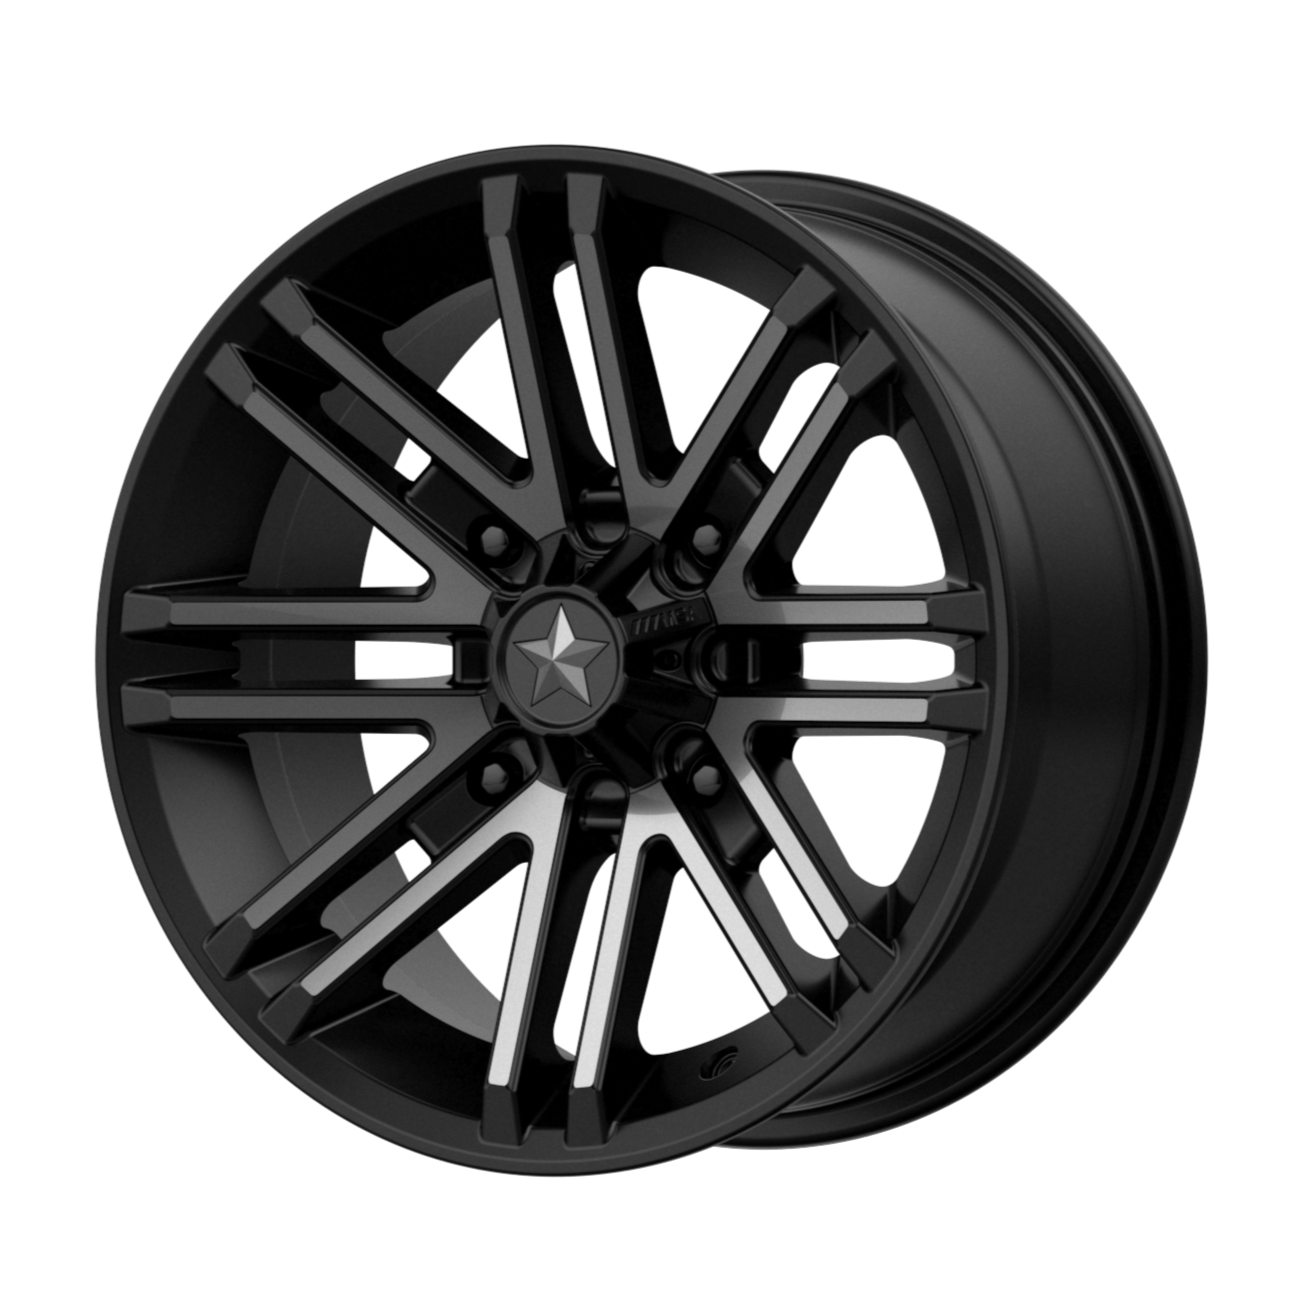 MSA Offroad Wheels M40 ROGUE 14x7 10 4x137/4x137 Satin Black Titanium Tint